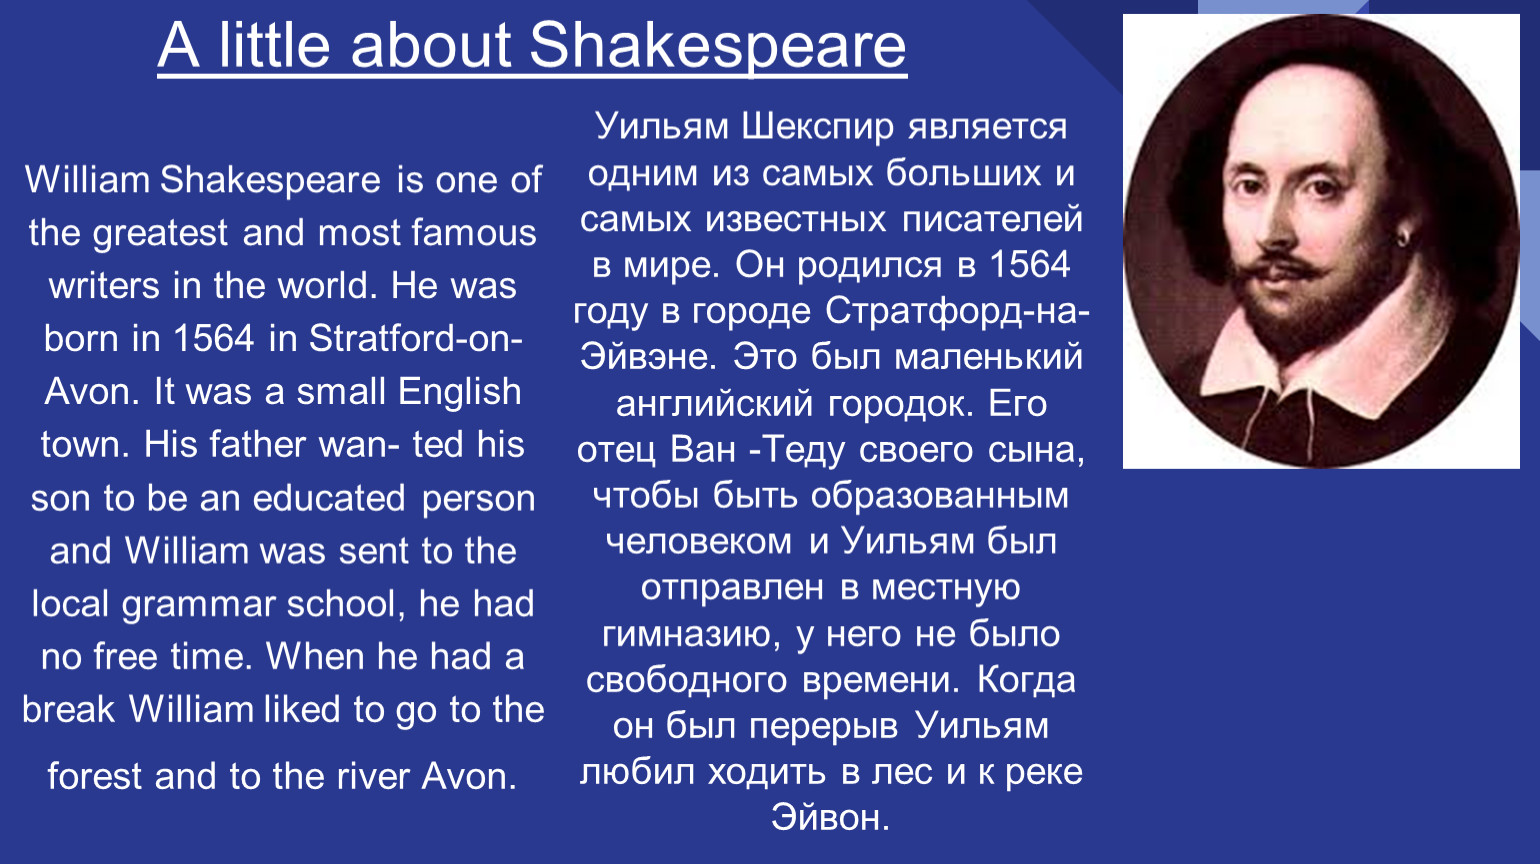 Шекспира на английском языке с переводом. Шекспир на английском языке. William Shakespeare презентация на английском. Уильям Шекспир самый известный писатель в мире. Уильям Шекспир на английском.